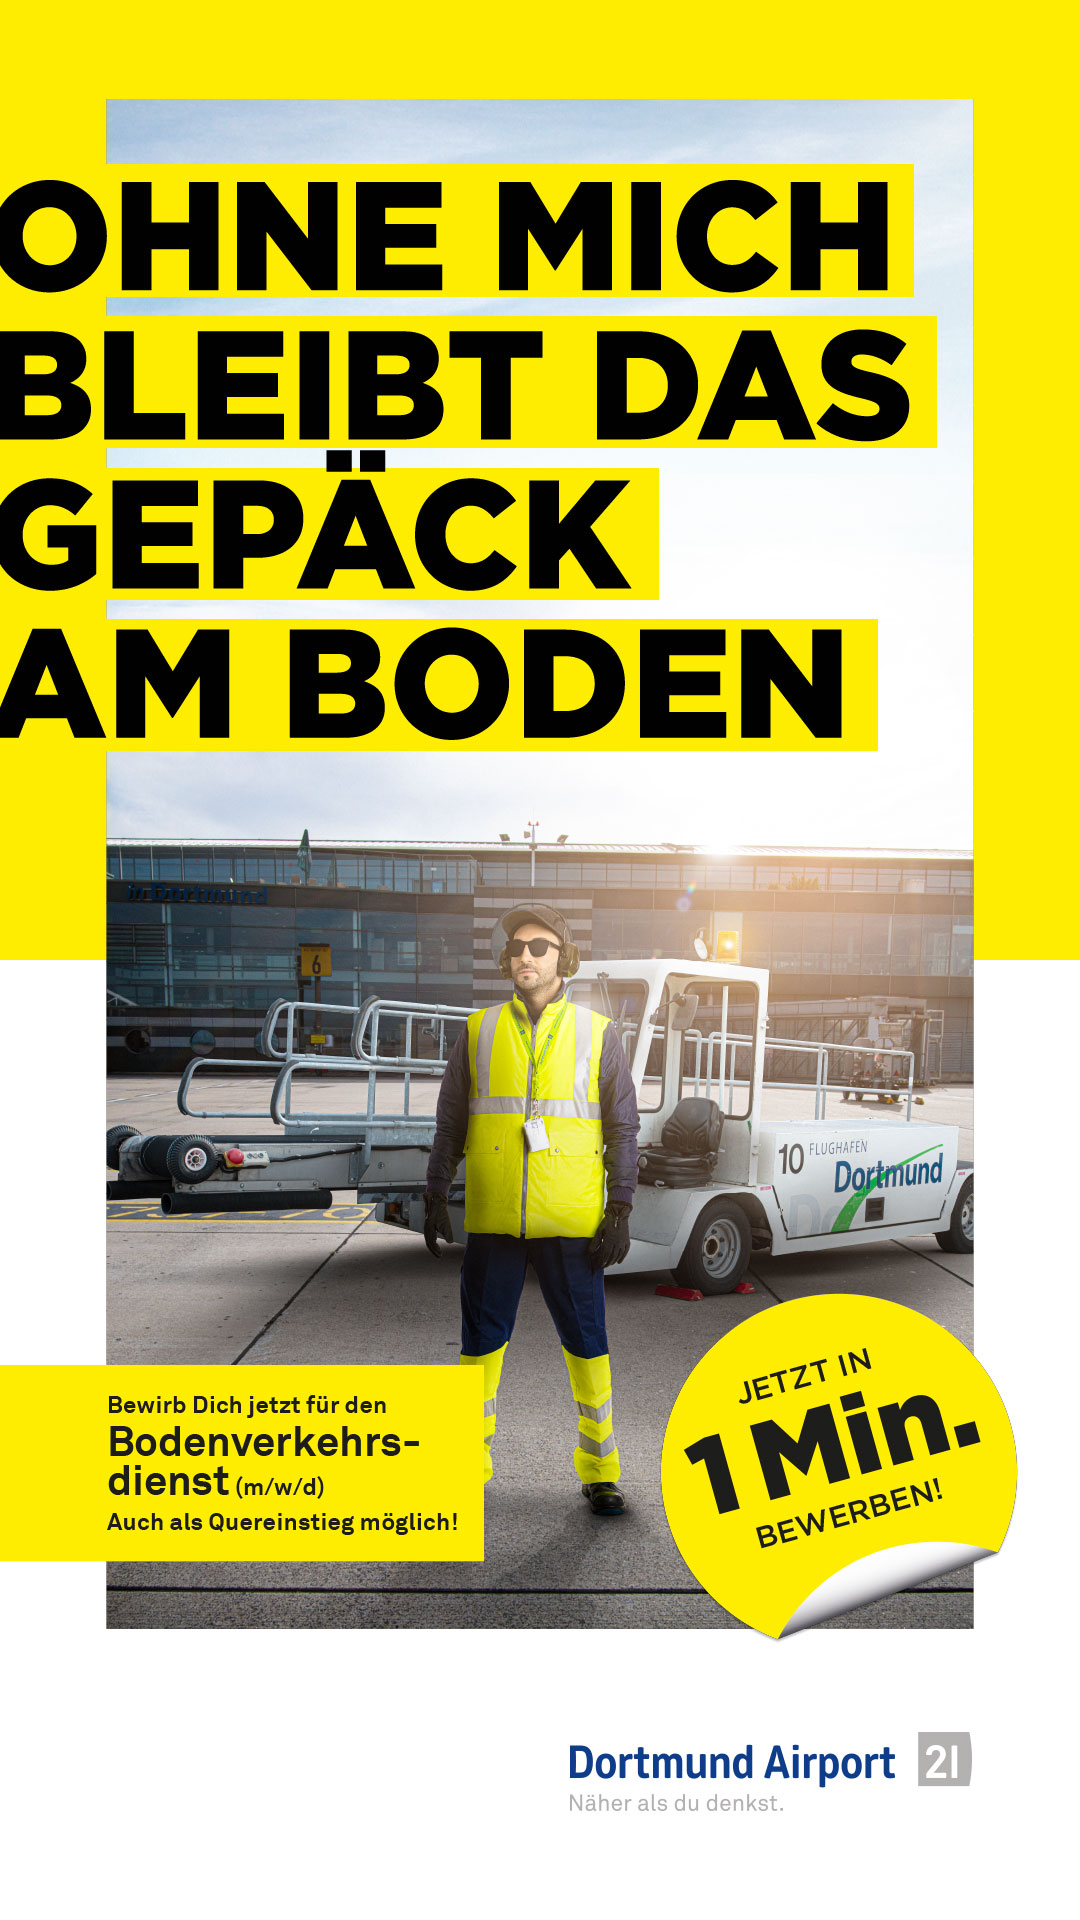 Stellenanzeige für Bodenverkehrsdienst, Mitarbeiter vor Flugzeug, Text "Ohne mich bleibt das Gepäck am Boden", Dortmund Airport